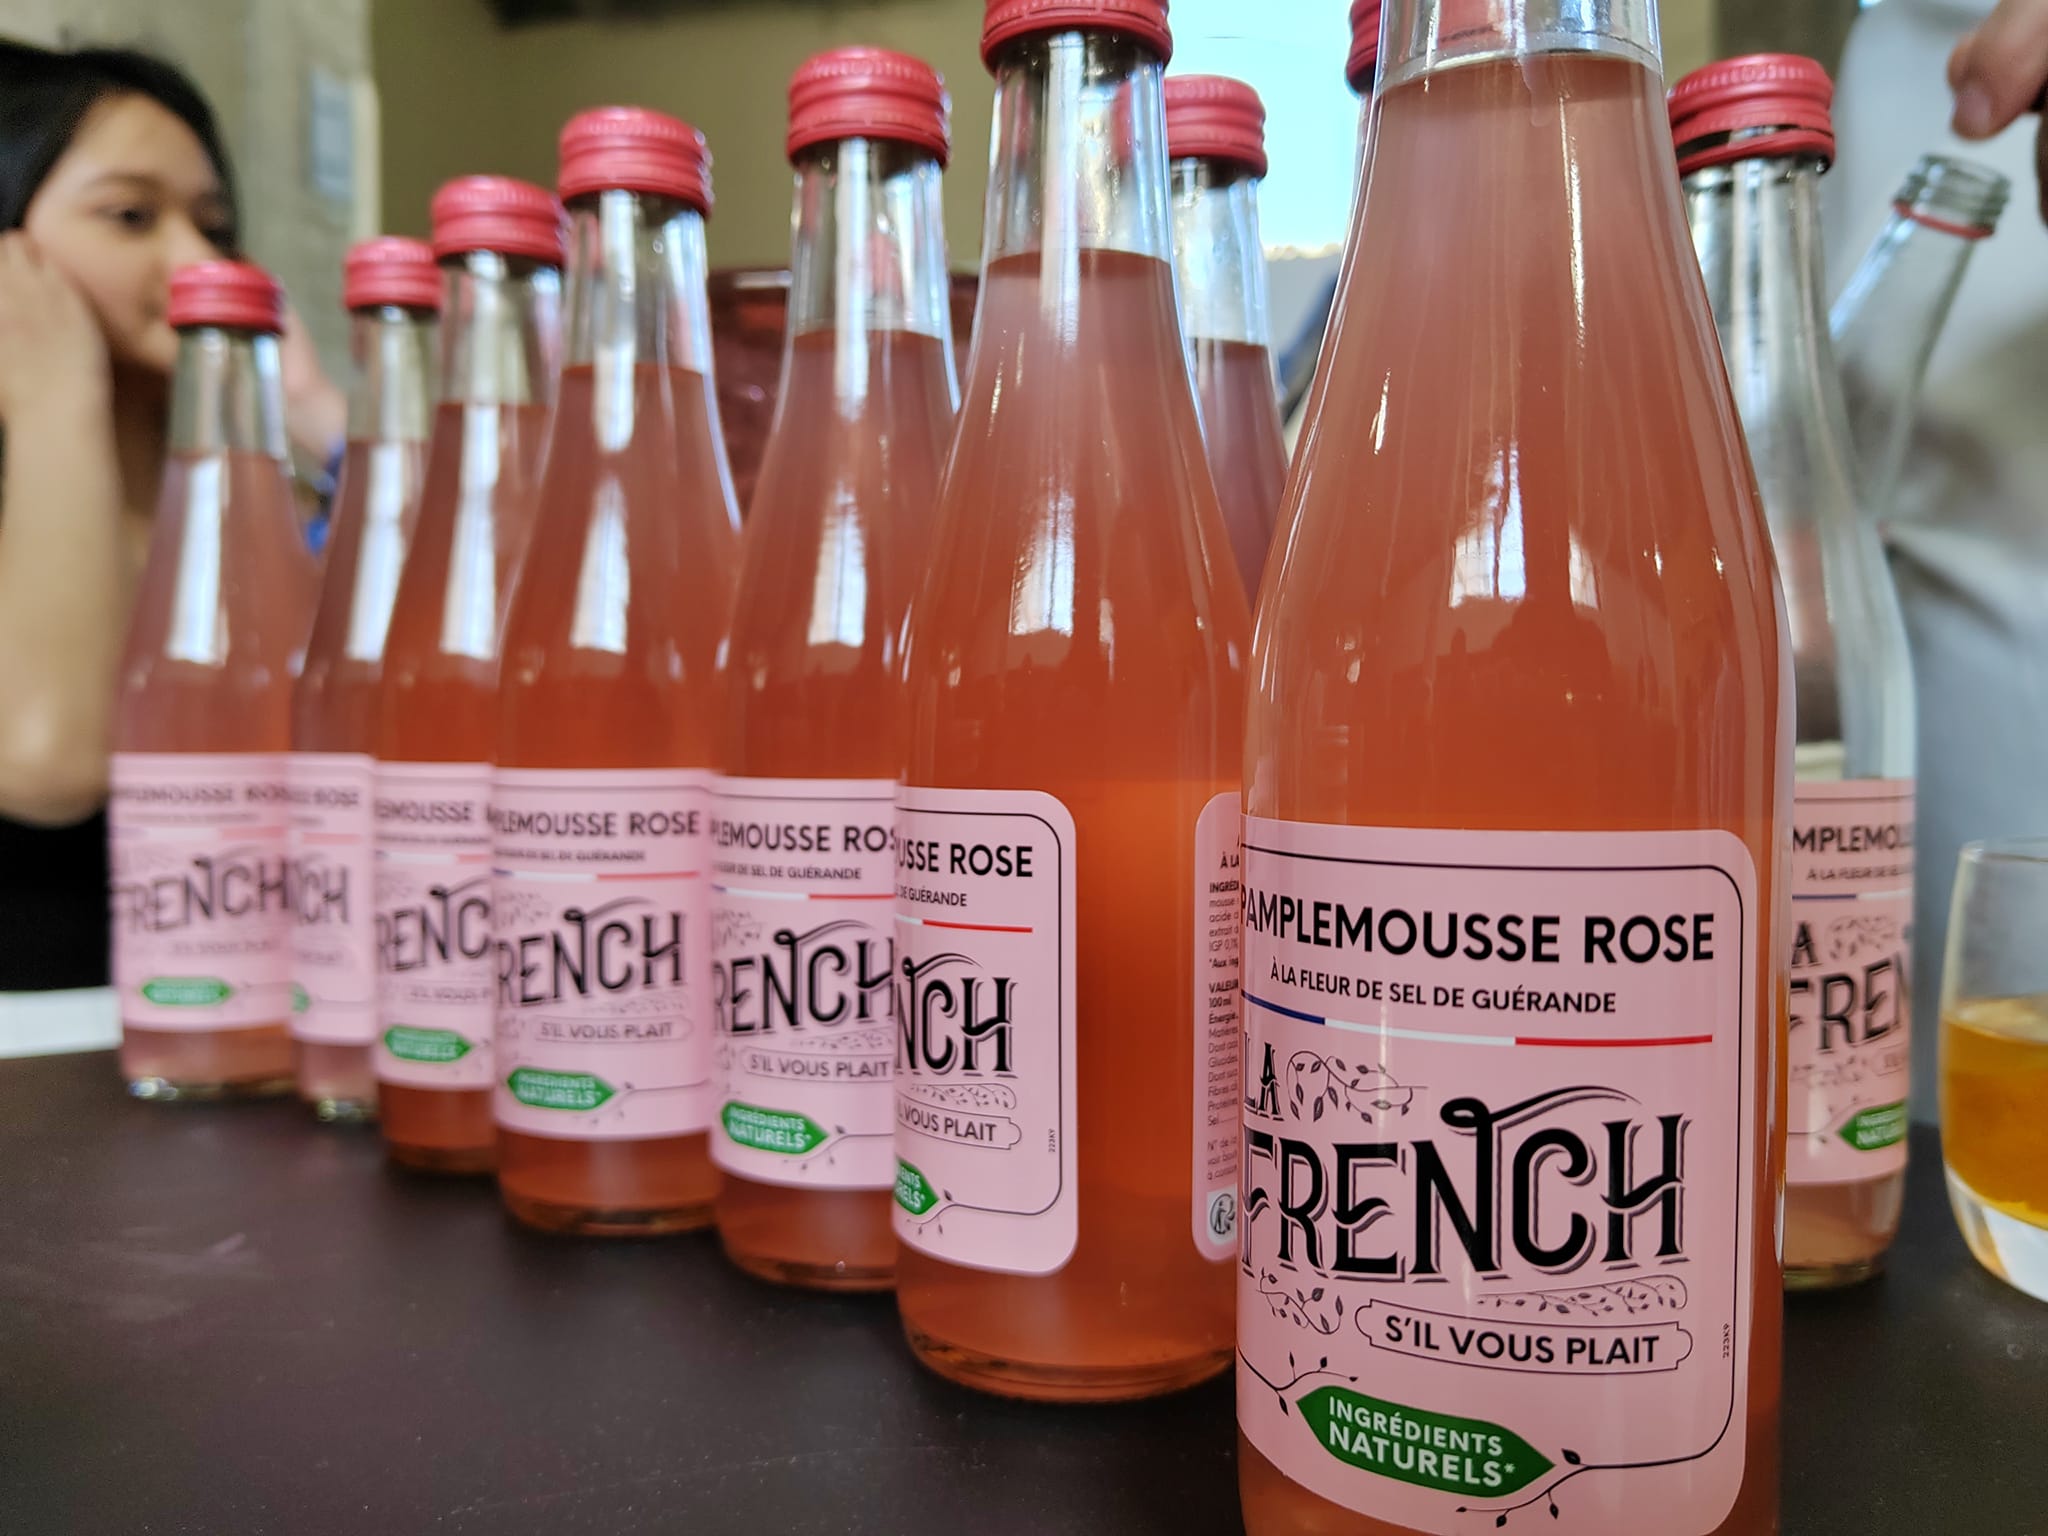 La French s'il vous plaît - Pamplemousse rose